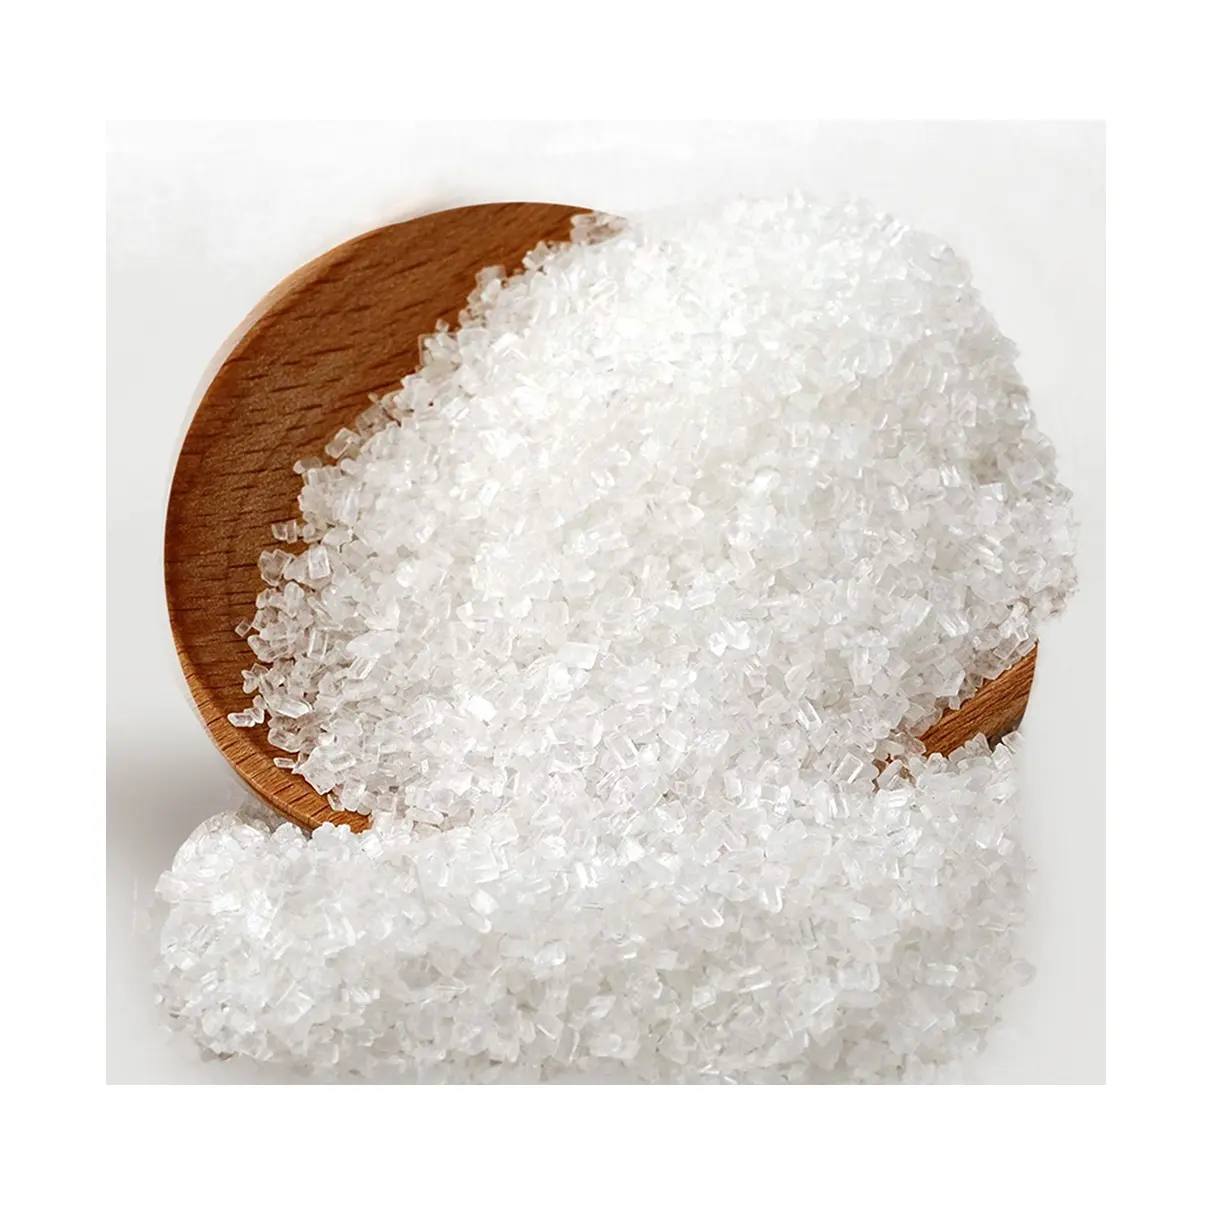 Guter Preis Zucker ICU 45 Raffinierter Rohrzucker Brasilien Weiß zucker 50kg Preis